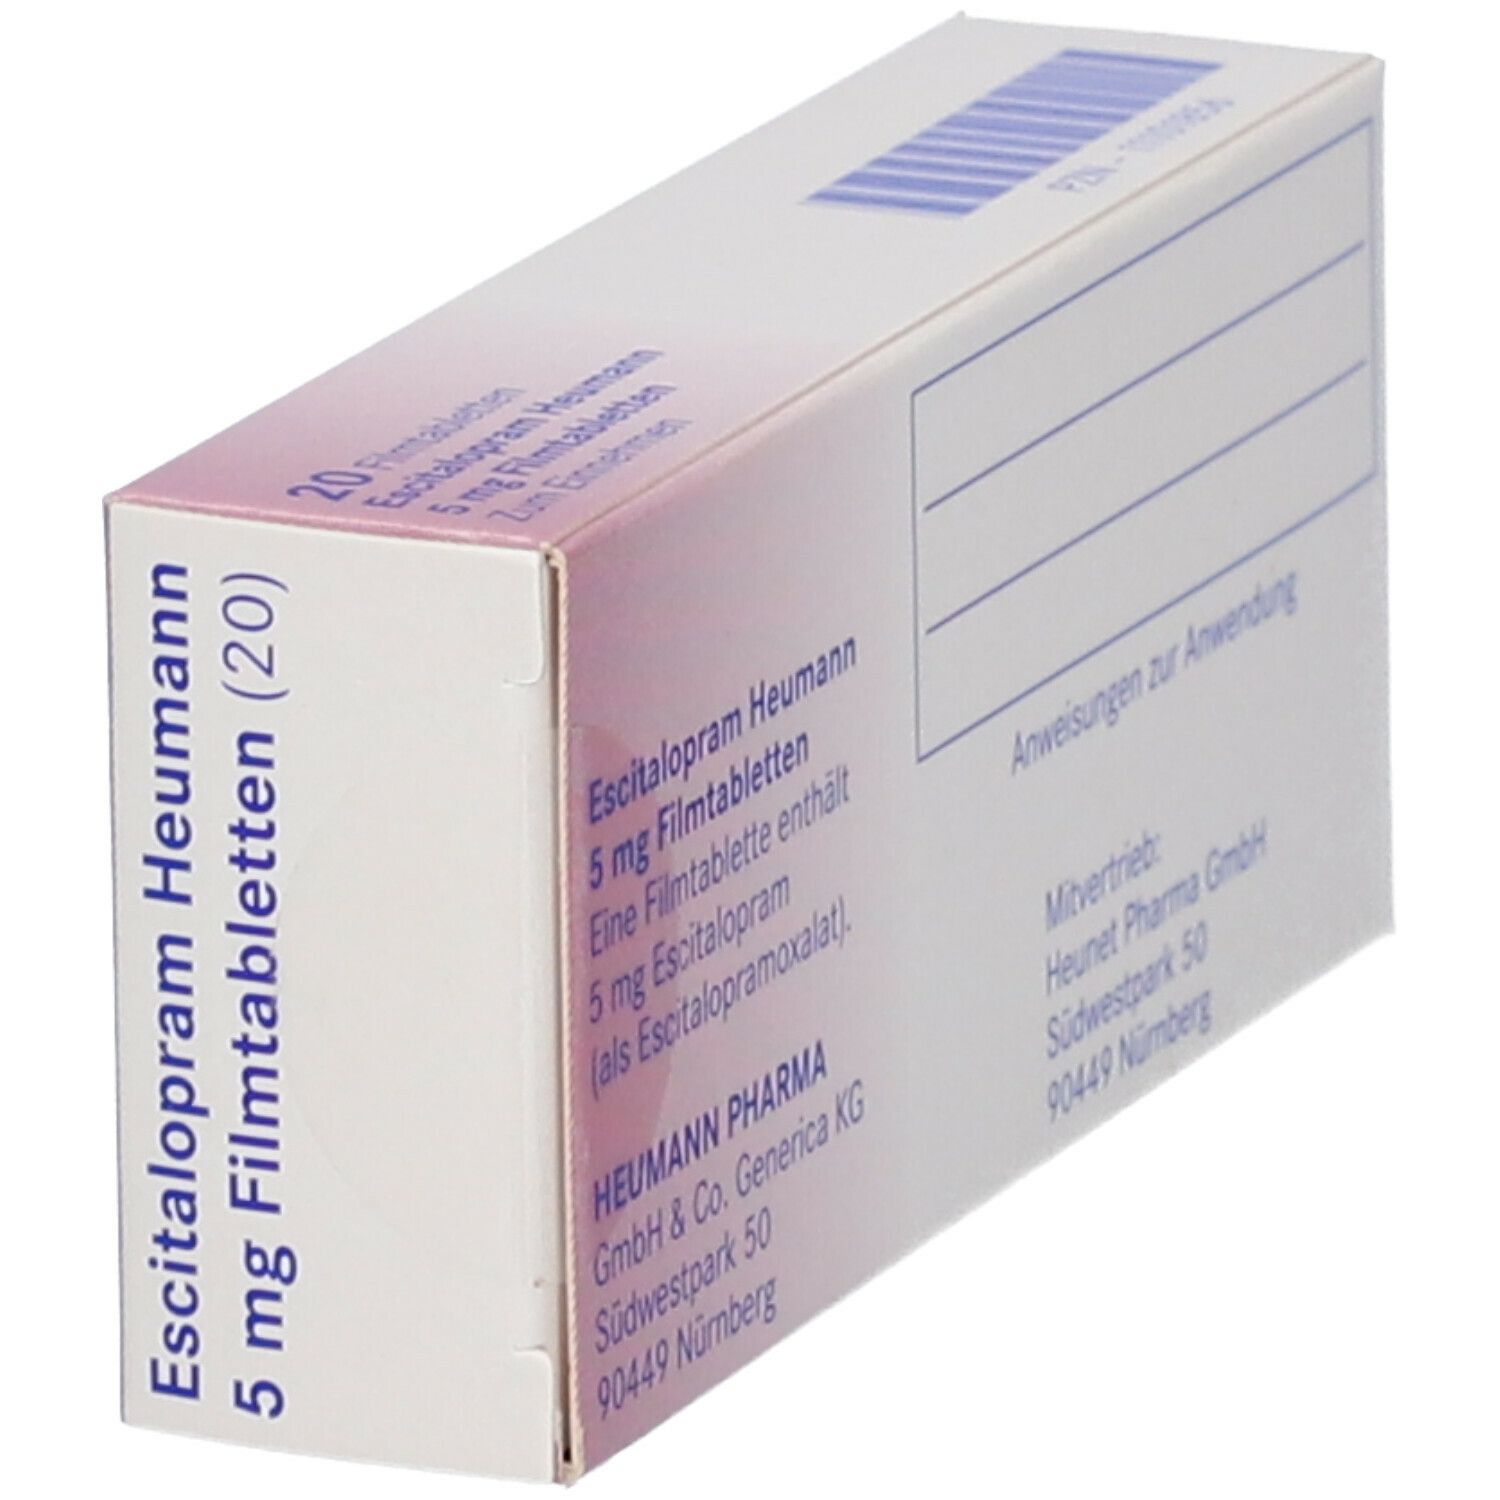 Escitalopram Heumann 5 mg